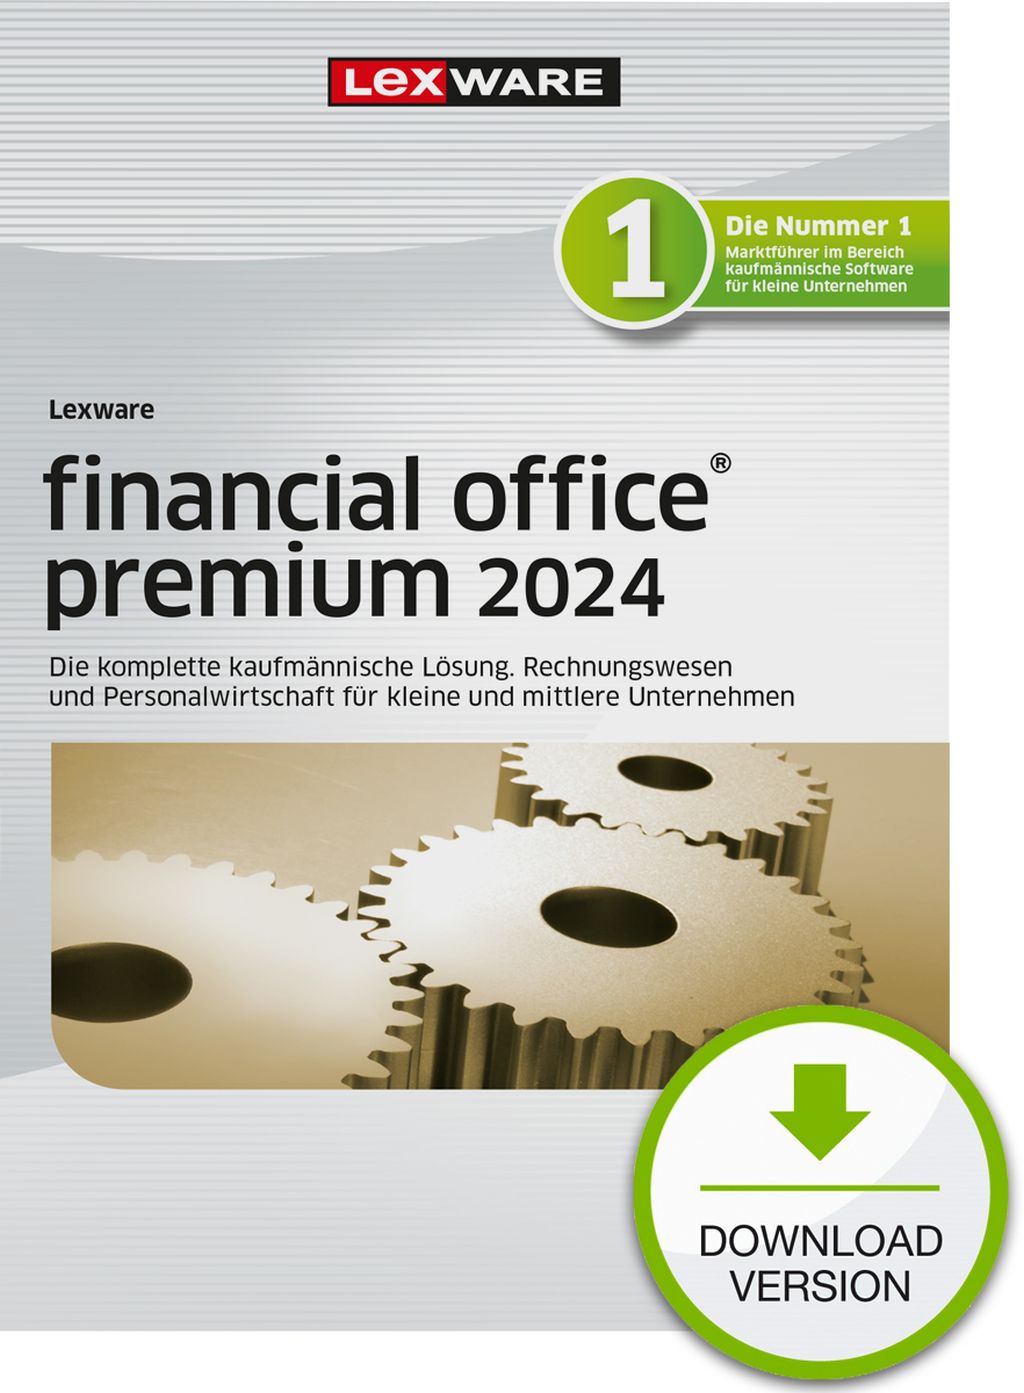 Lexware financial office premium 2024 "unbegrenzte Laufzeit" Download